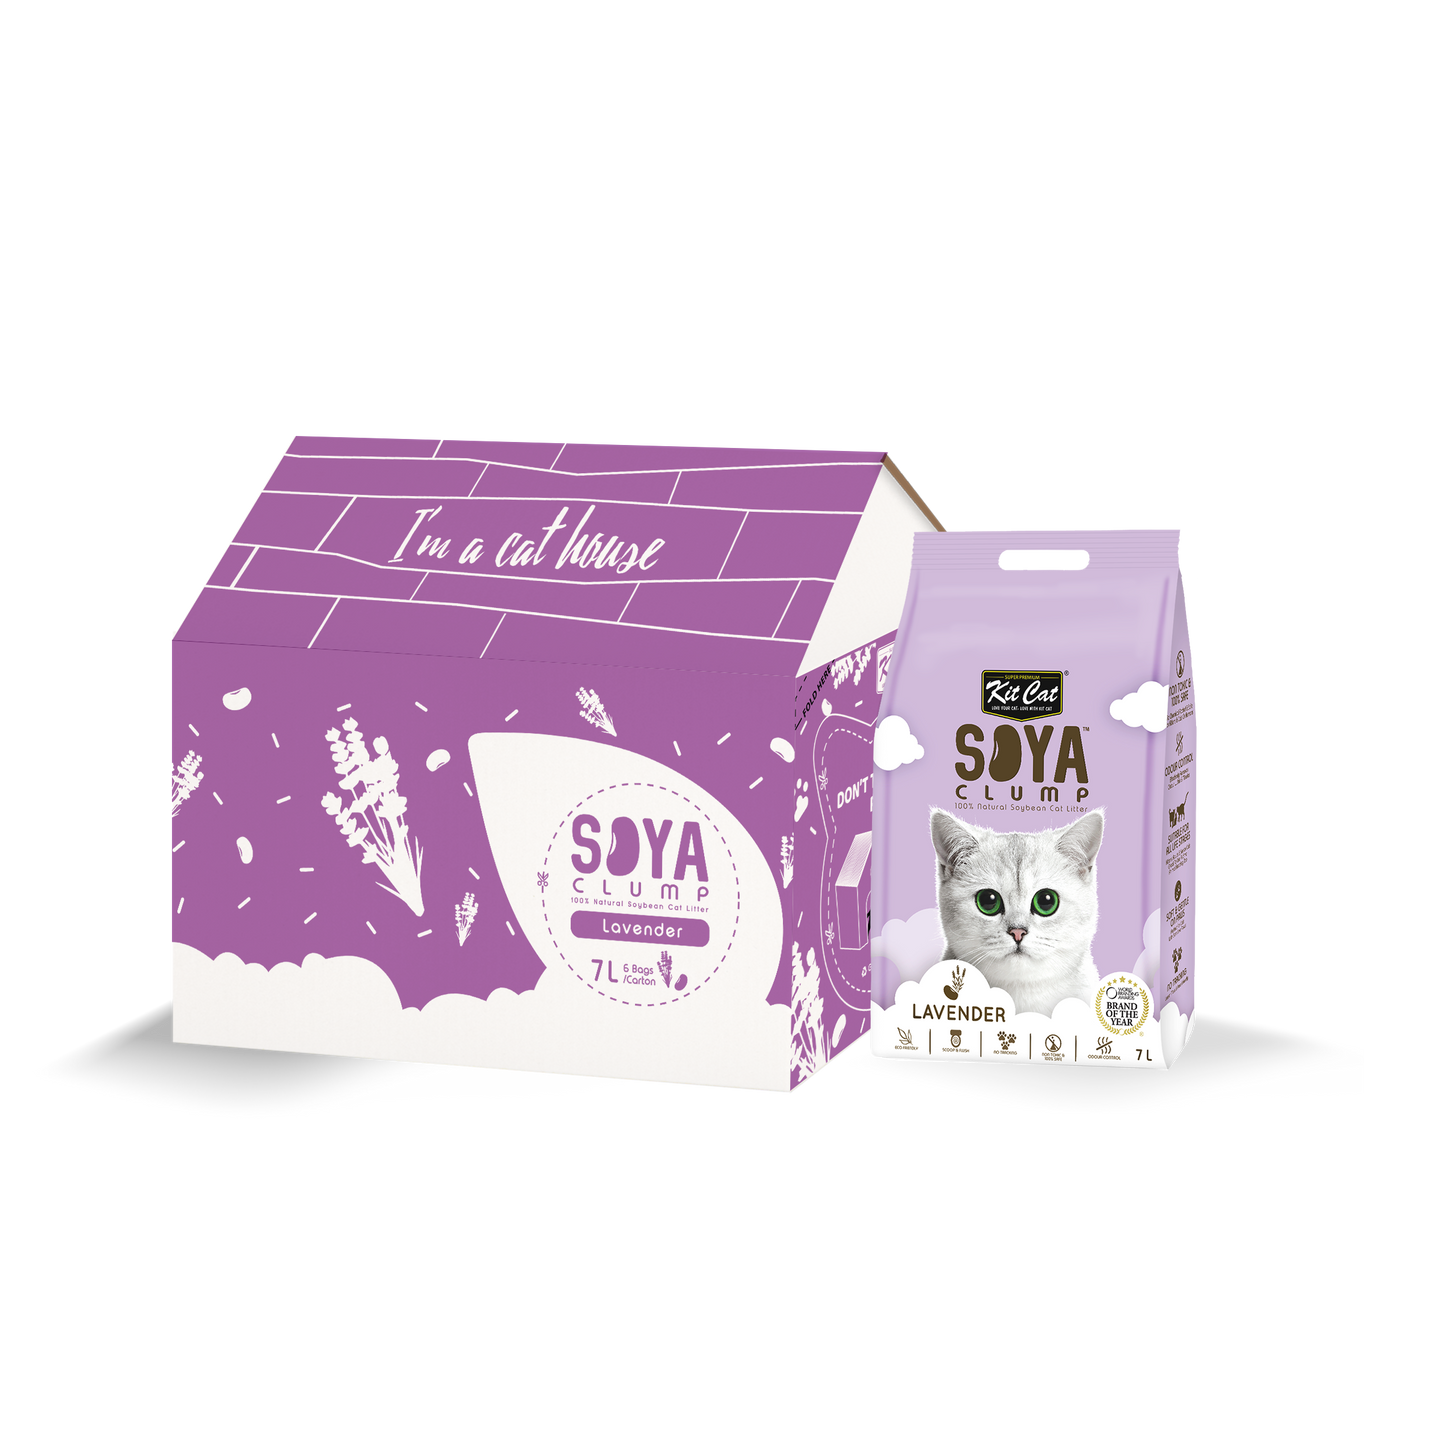 Kit Cat Soya Clump Cat Litter Lavender 7L (Bundle of 6)